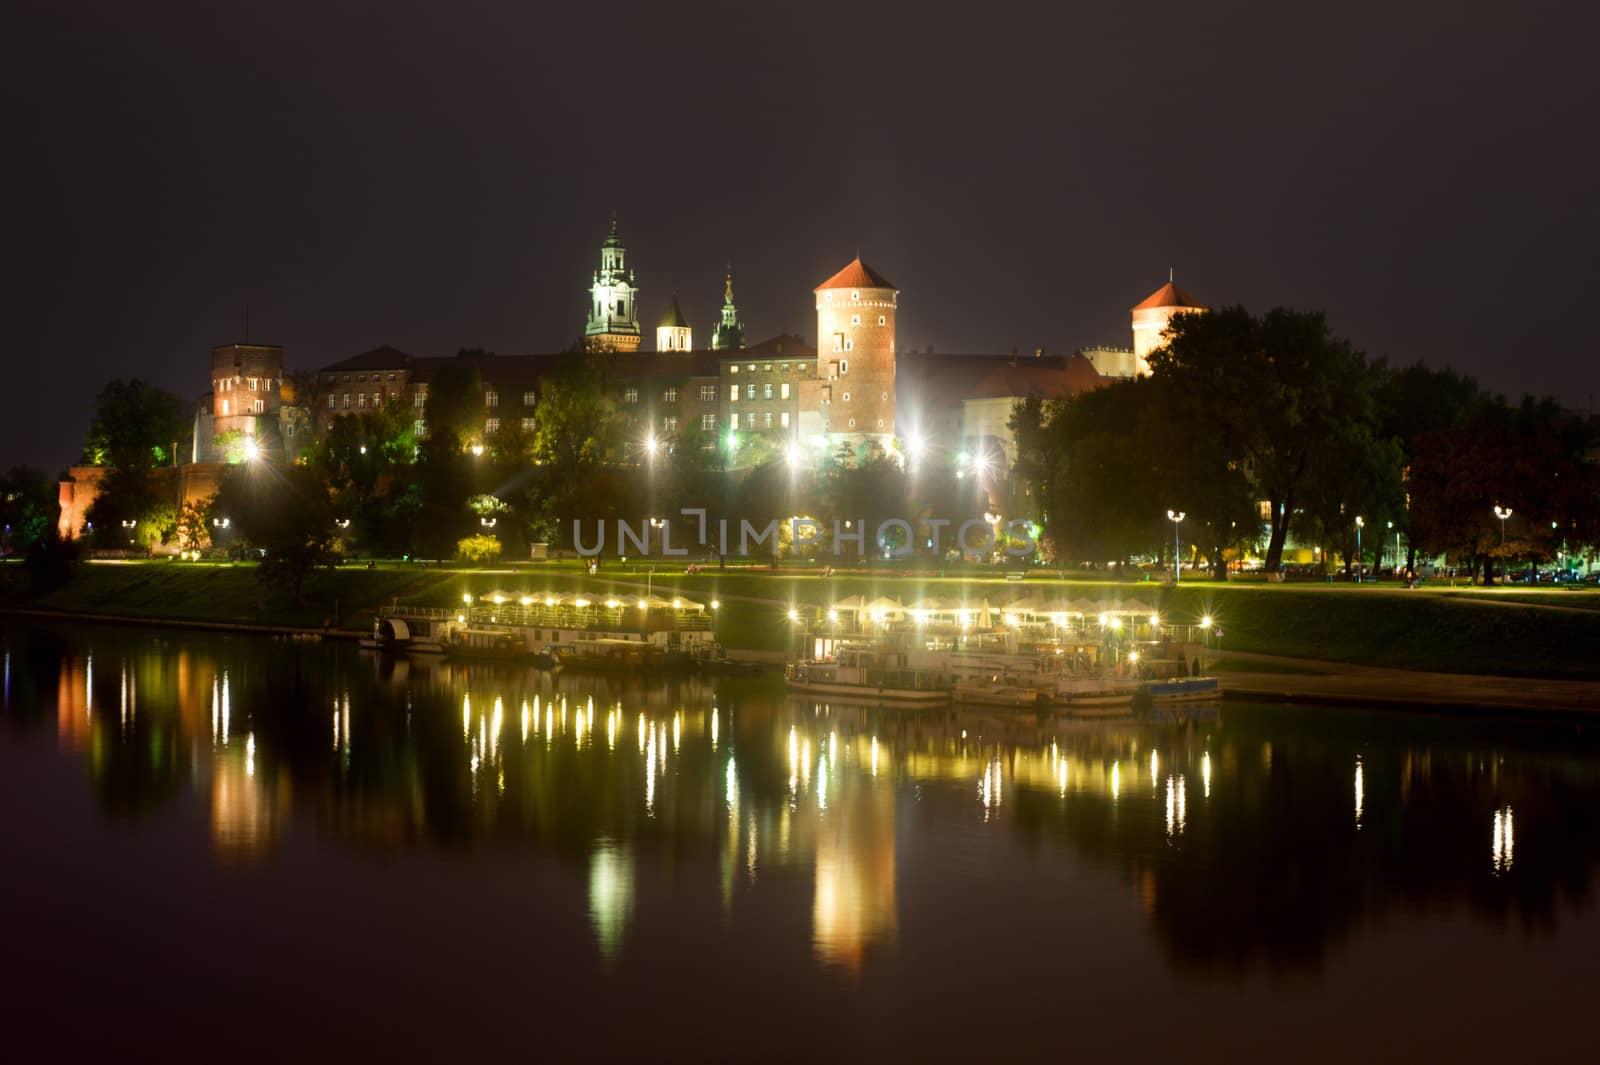 Poland's historical monument, medieval Vavel Castle in Krakow